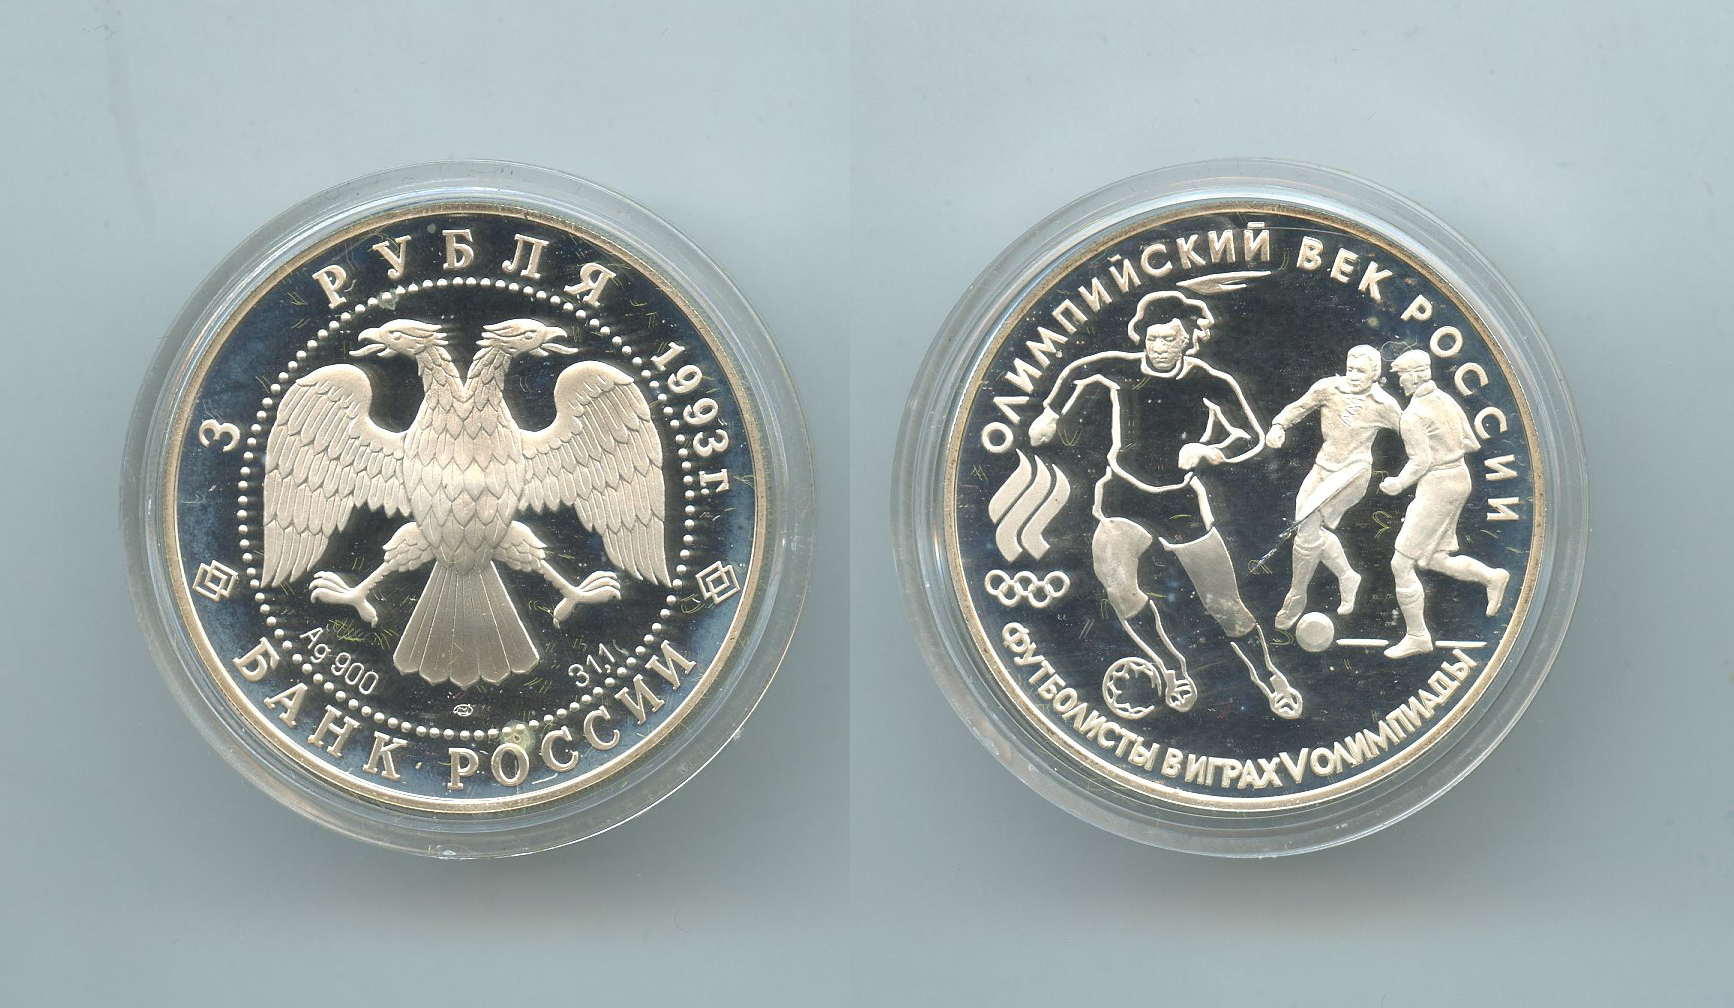 RUSSIA, 3 Rubli 1993 "Centenario CIO"